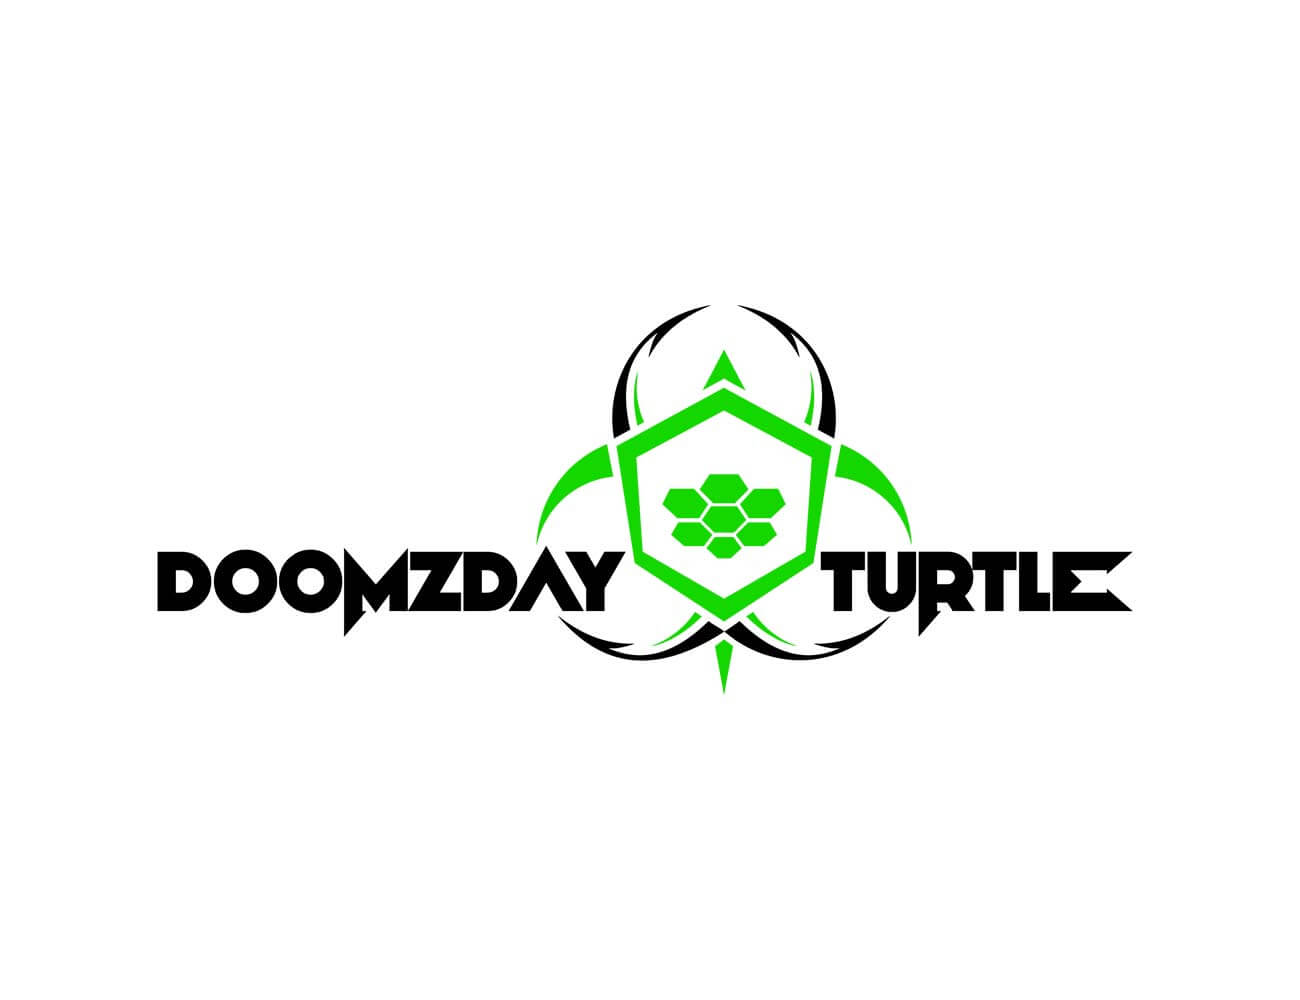 Doomzday Turtle lure logo